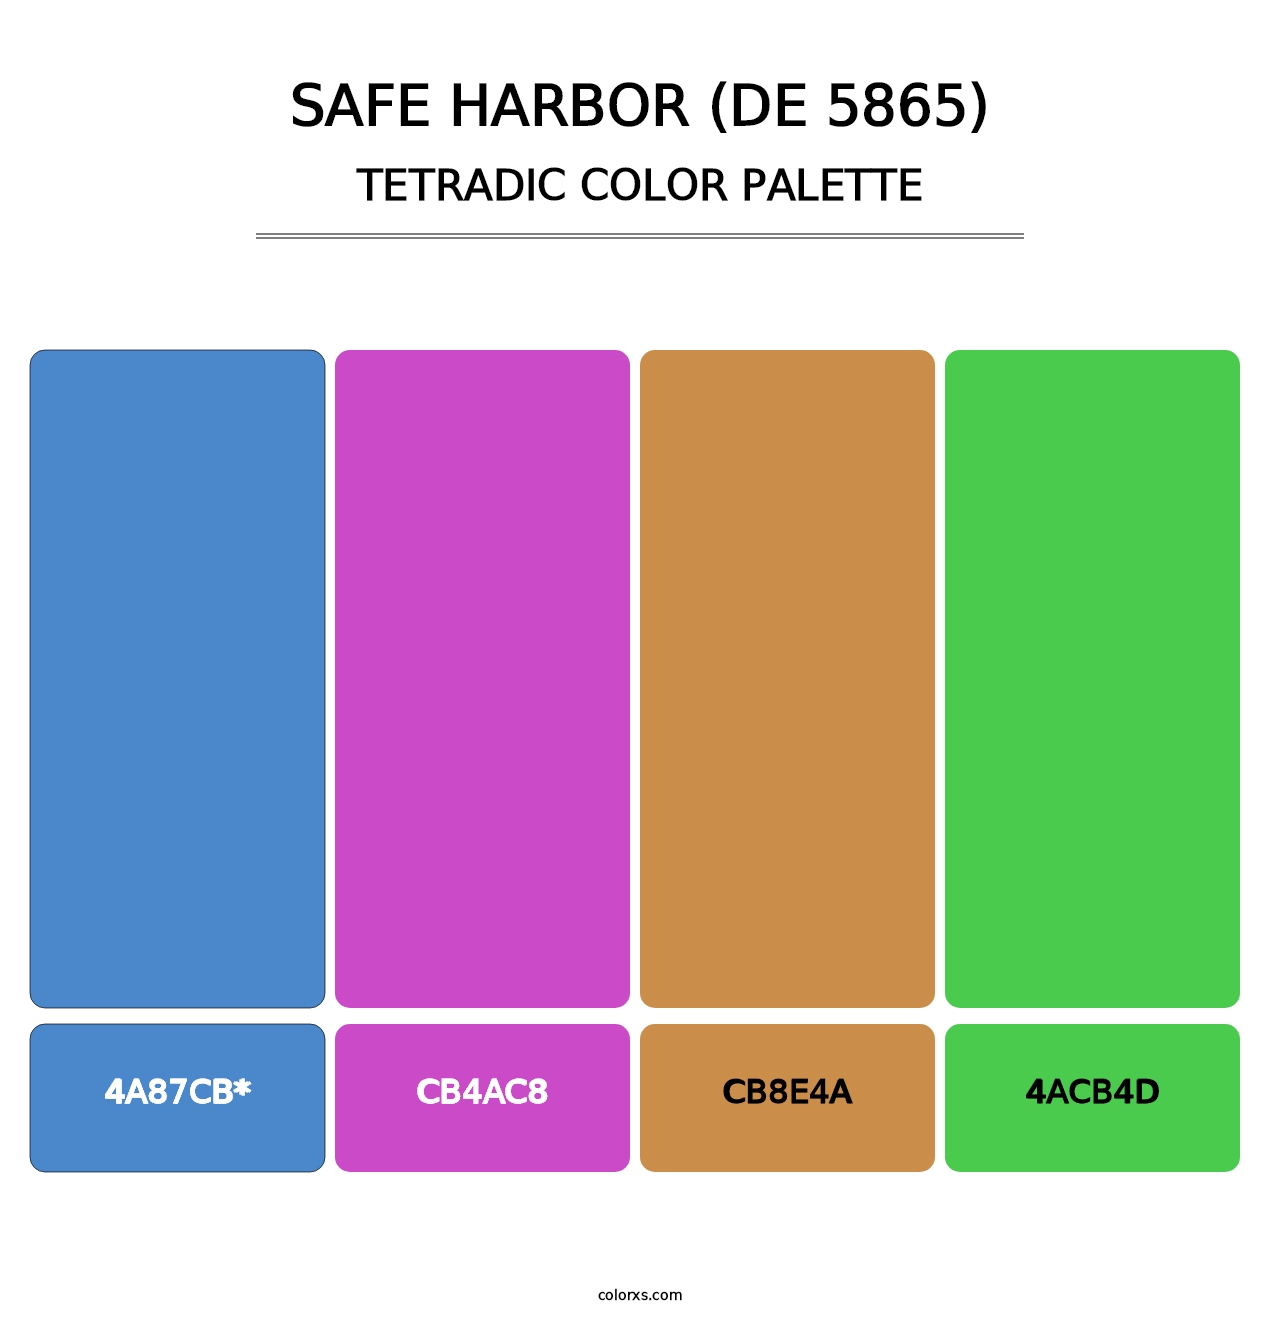 Safe Harbor (DE 5865) - Tetradic Color Palette